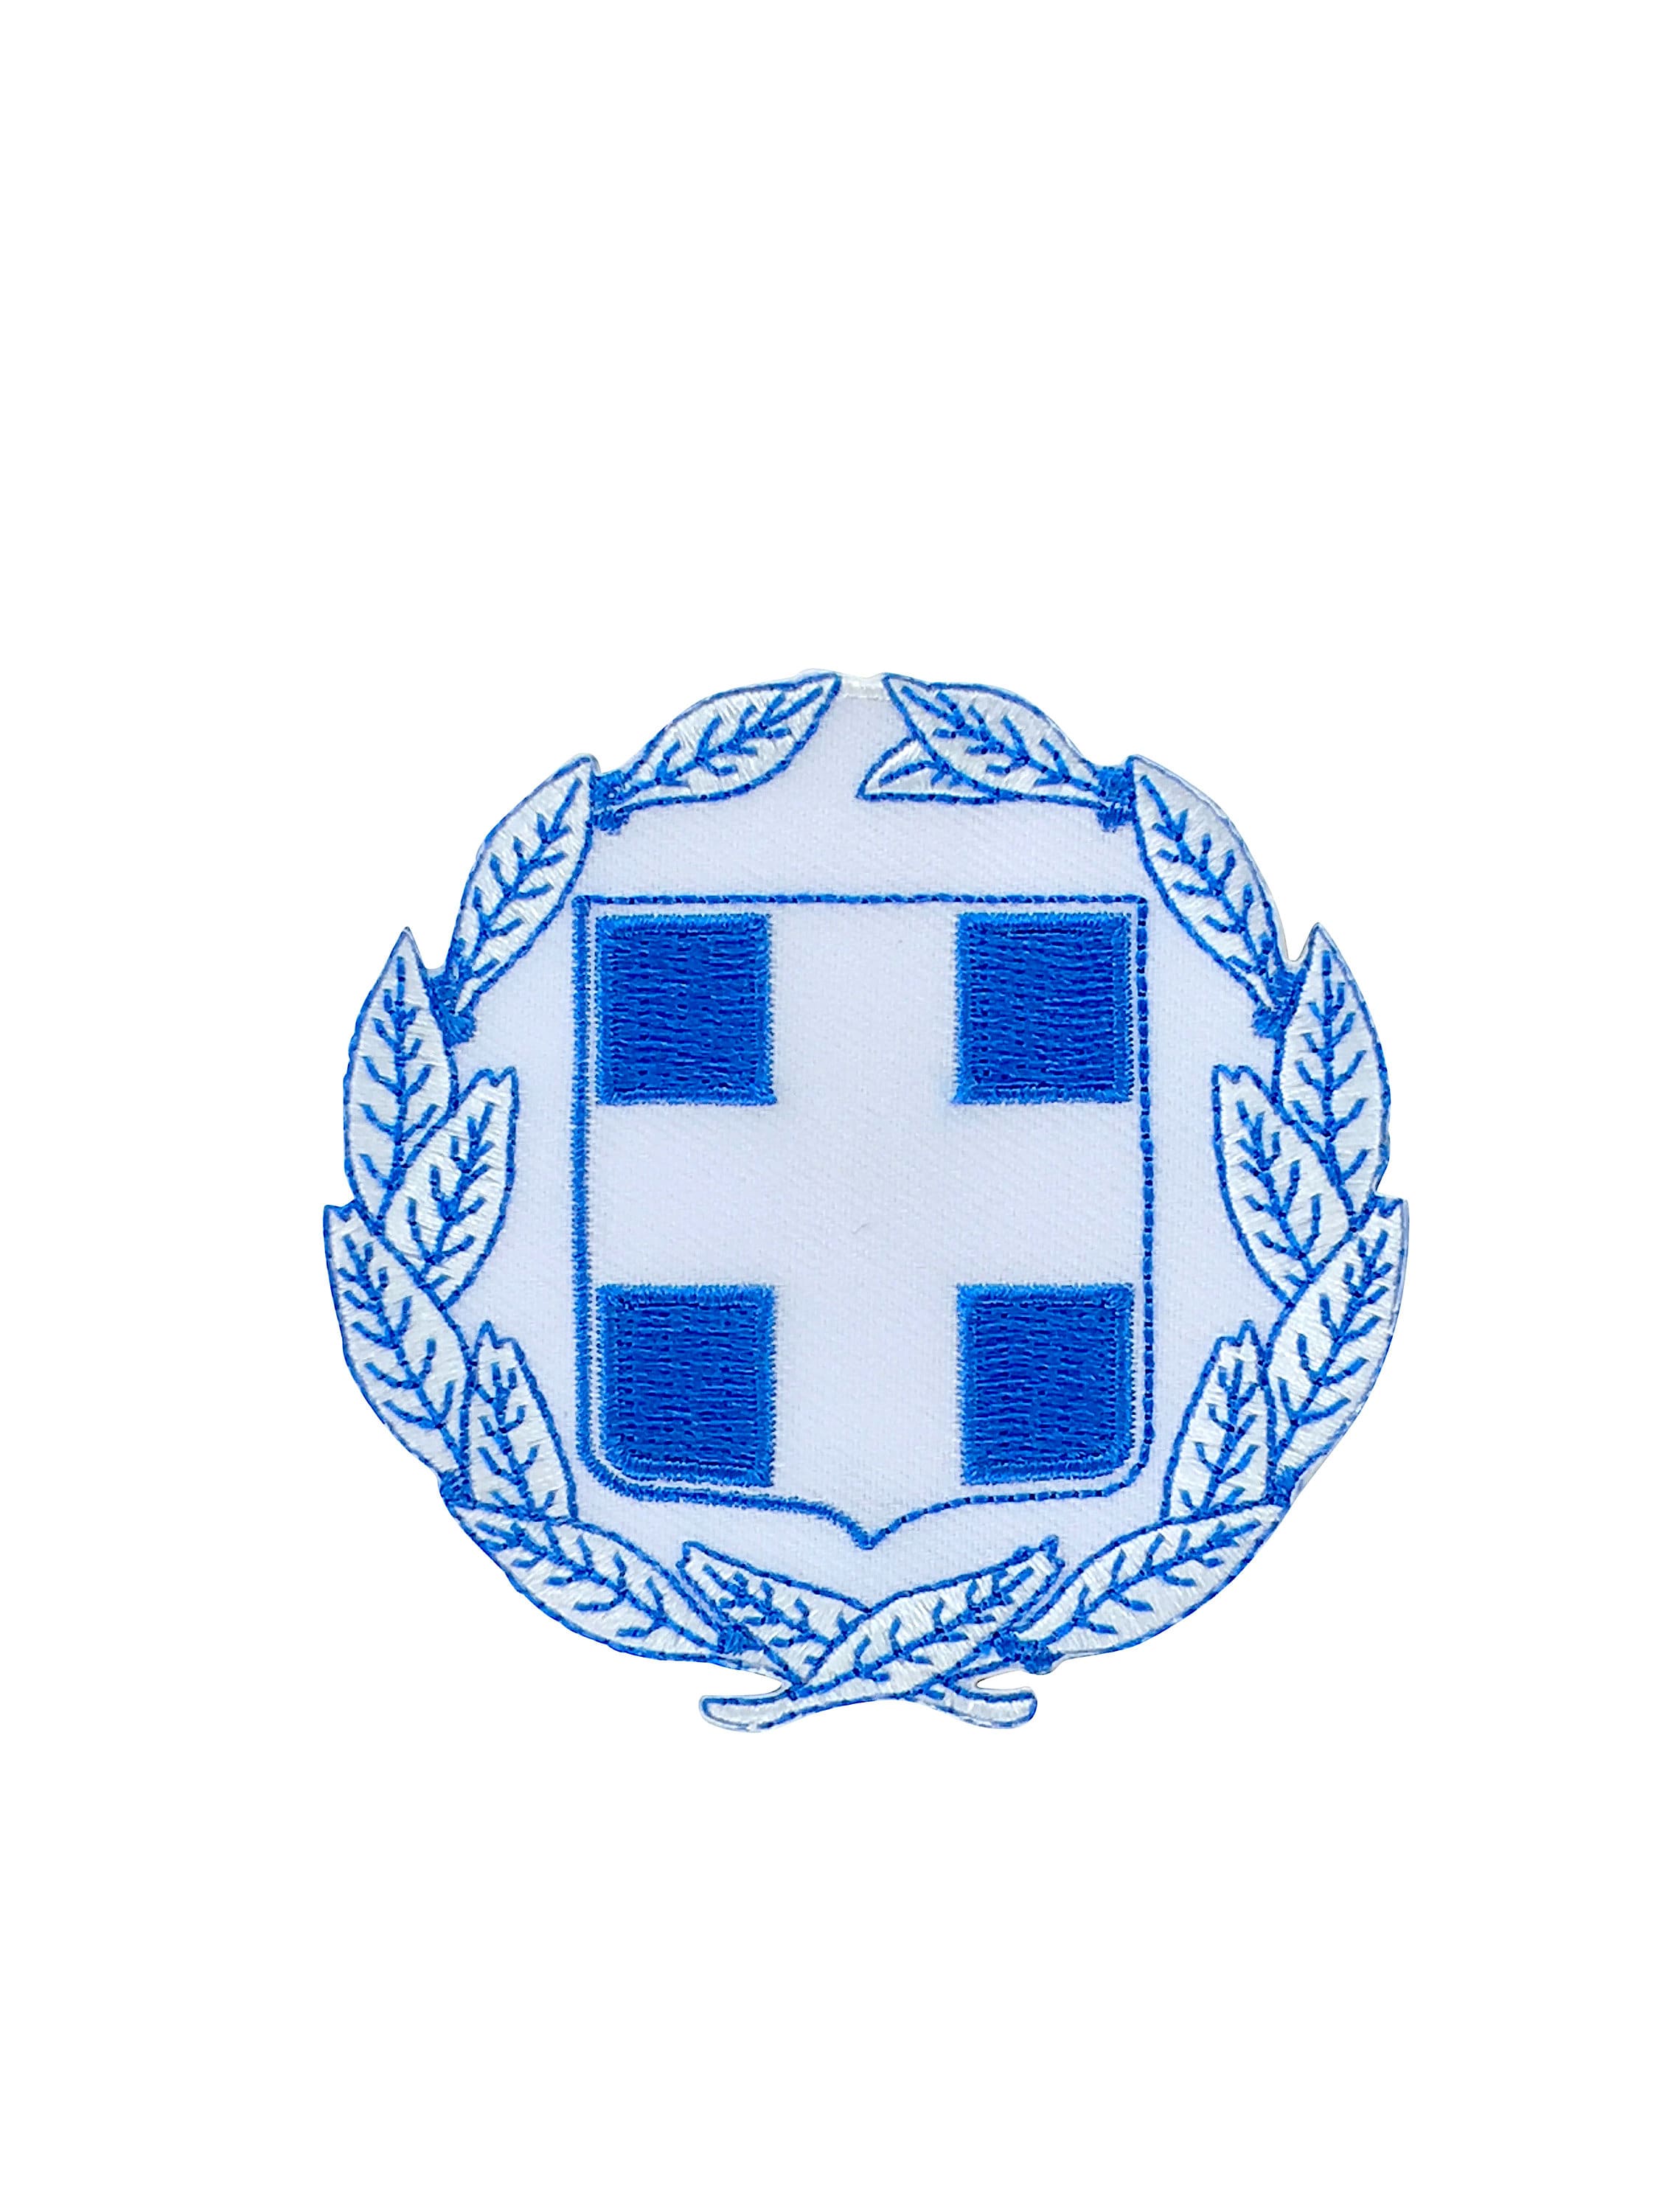 Флаг и герб греции